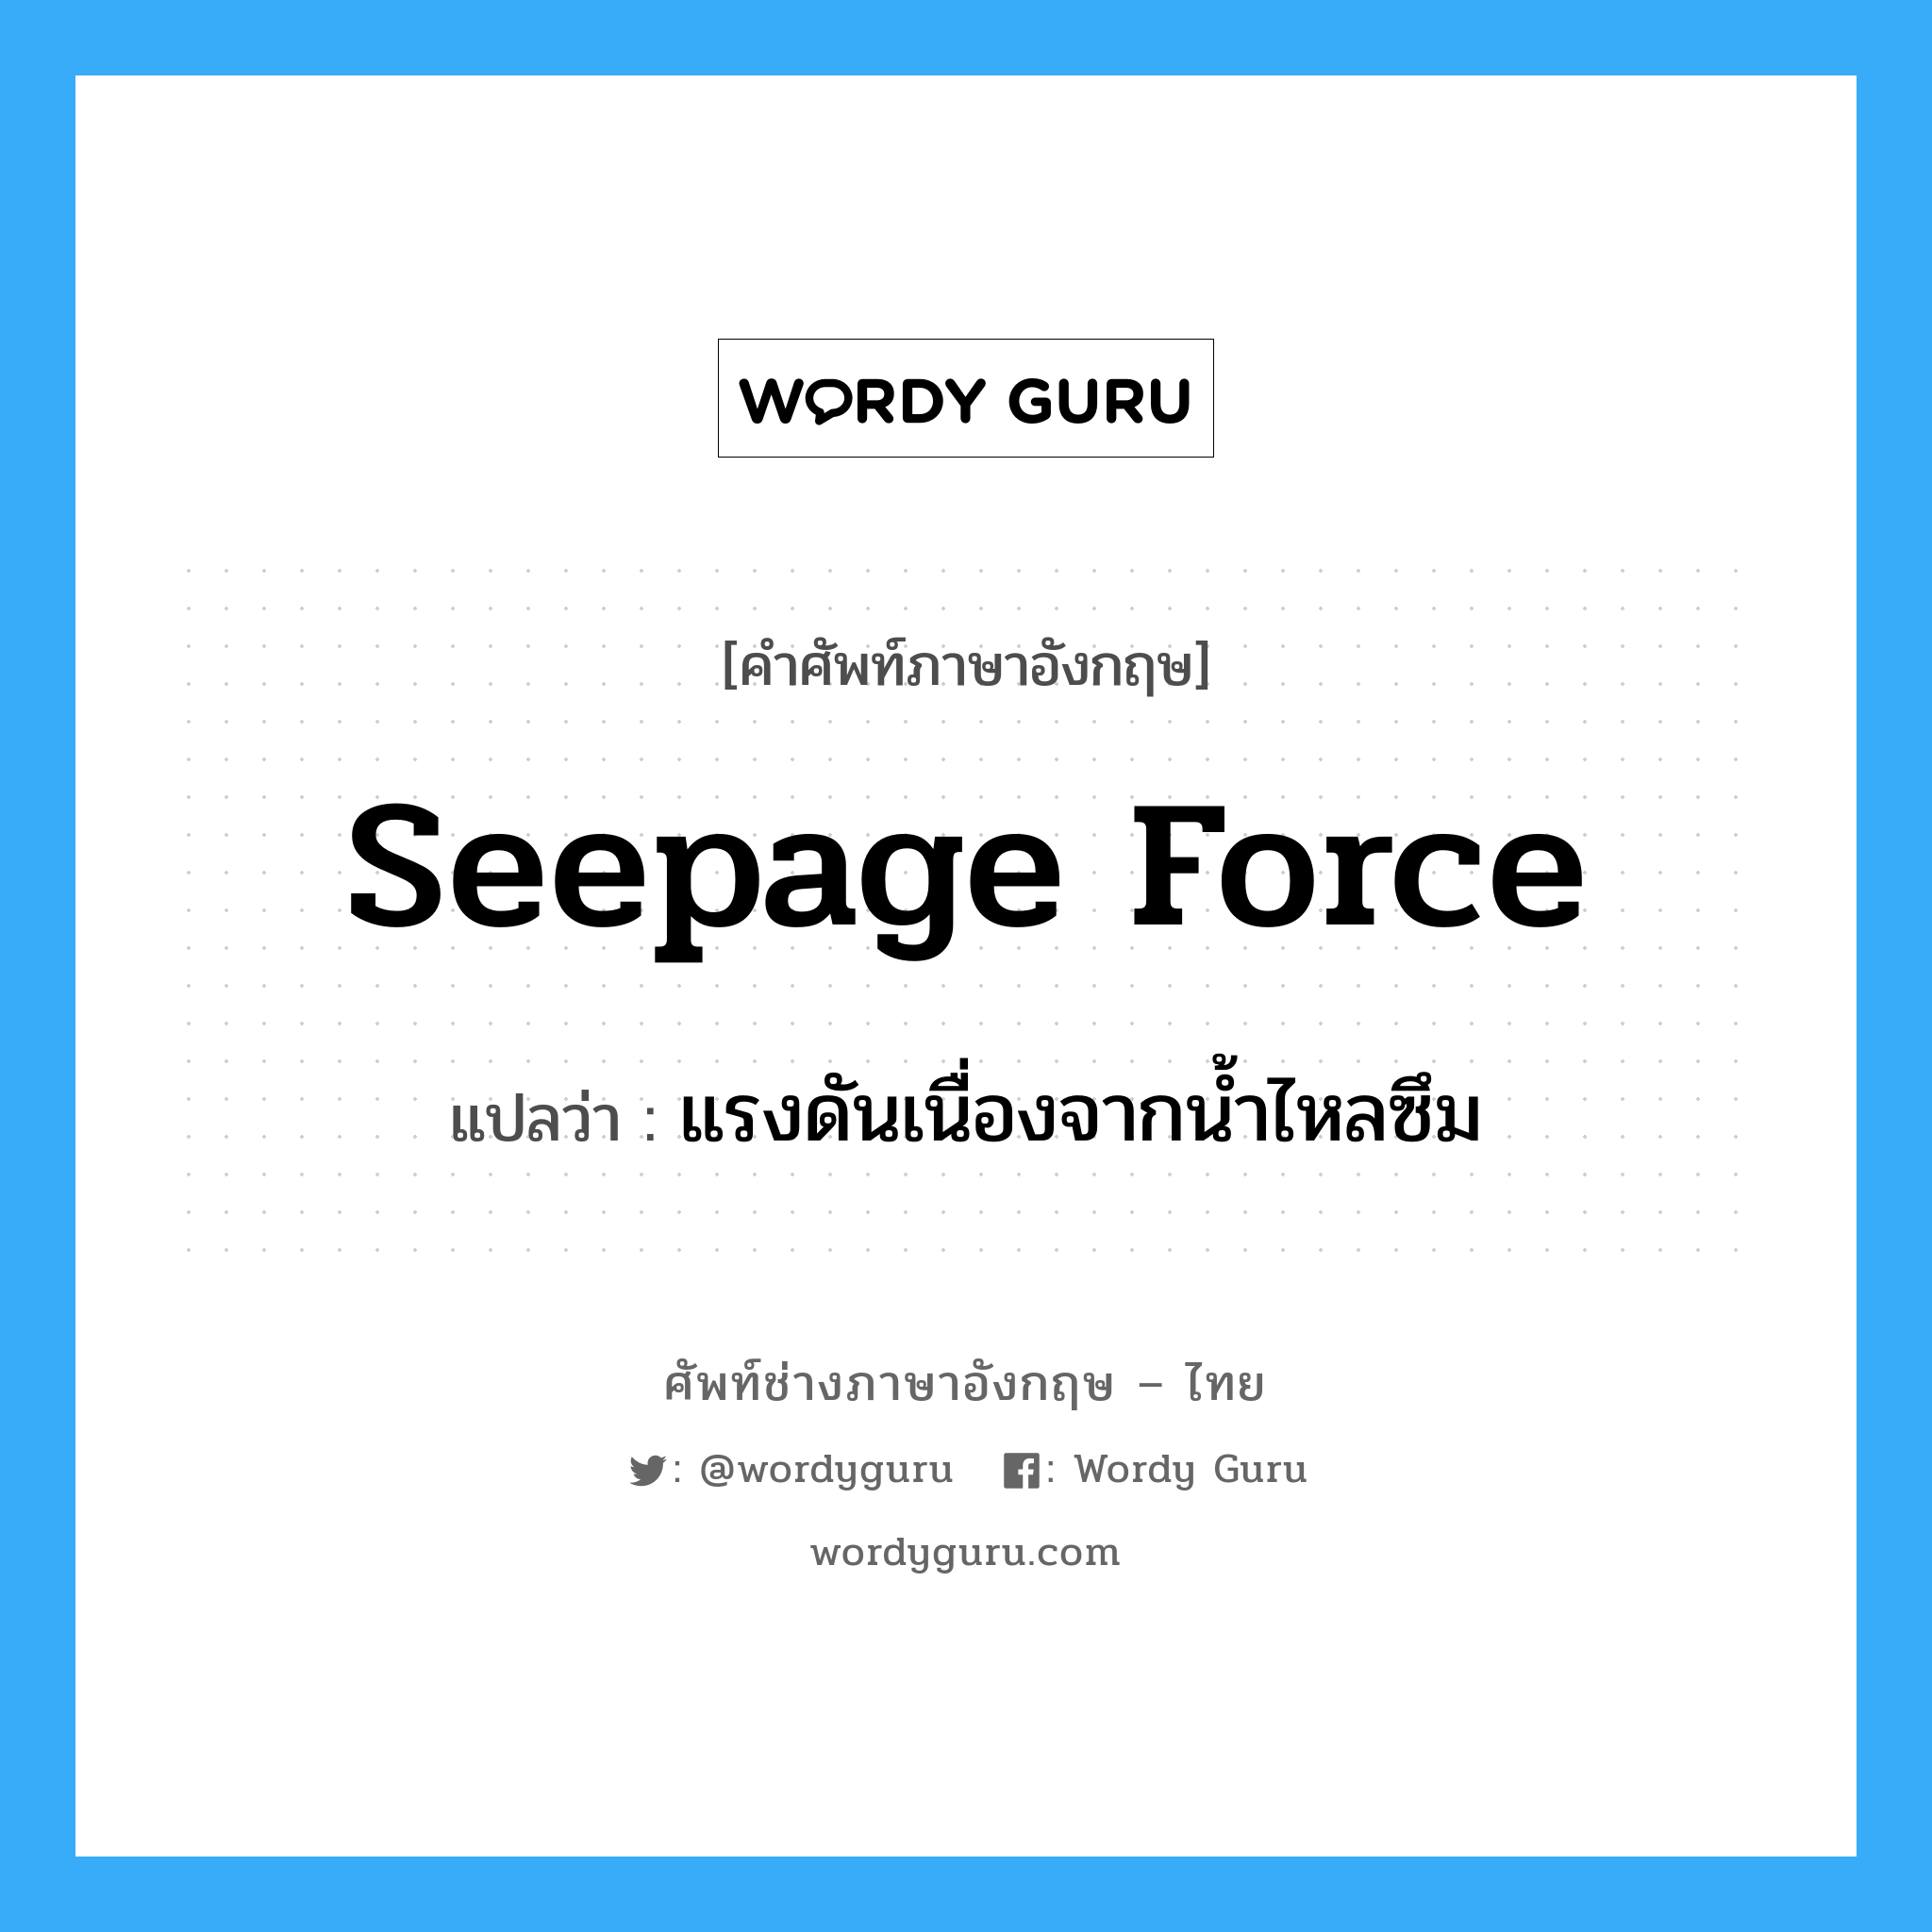 seepage force แปลว่า?, คำศัพท์ช่างภาษาอังกฤษ - ไทย seepage force คำศัพท์ภาษาอังกฤษ seepage force แปลว่า แรงดันเนื่องจากน้ำไหลซึม